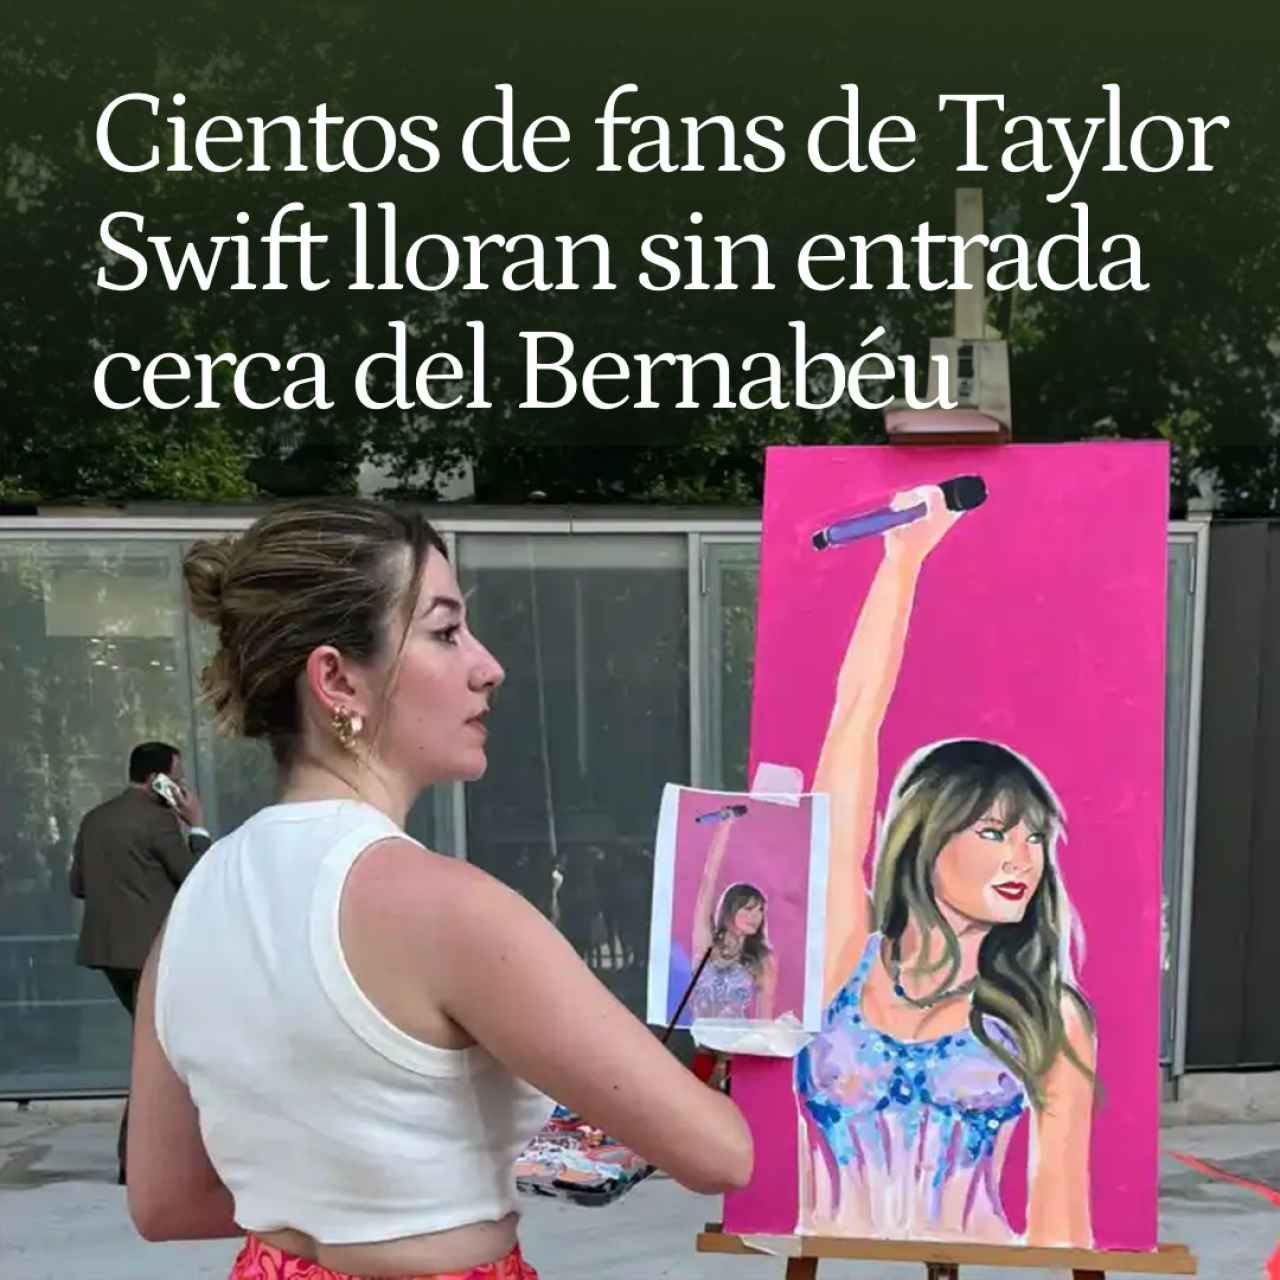 El concierto paralelo de Taylor Swift fuera del Bernabéu: cientos de fans lloran sin entrada